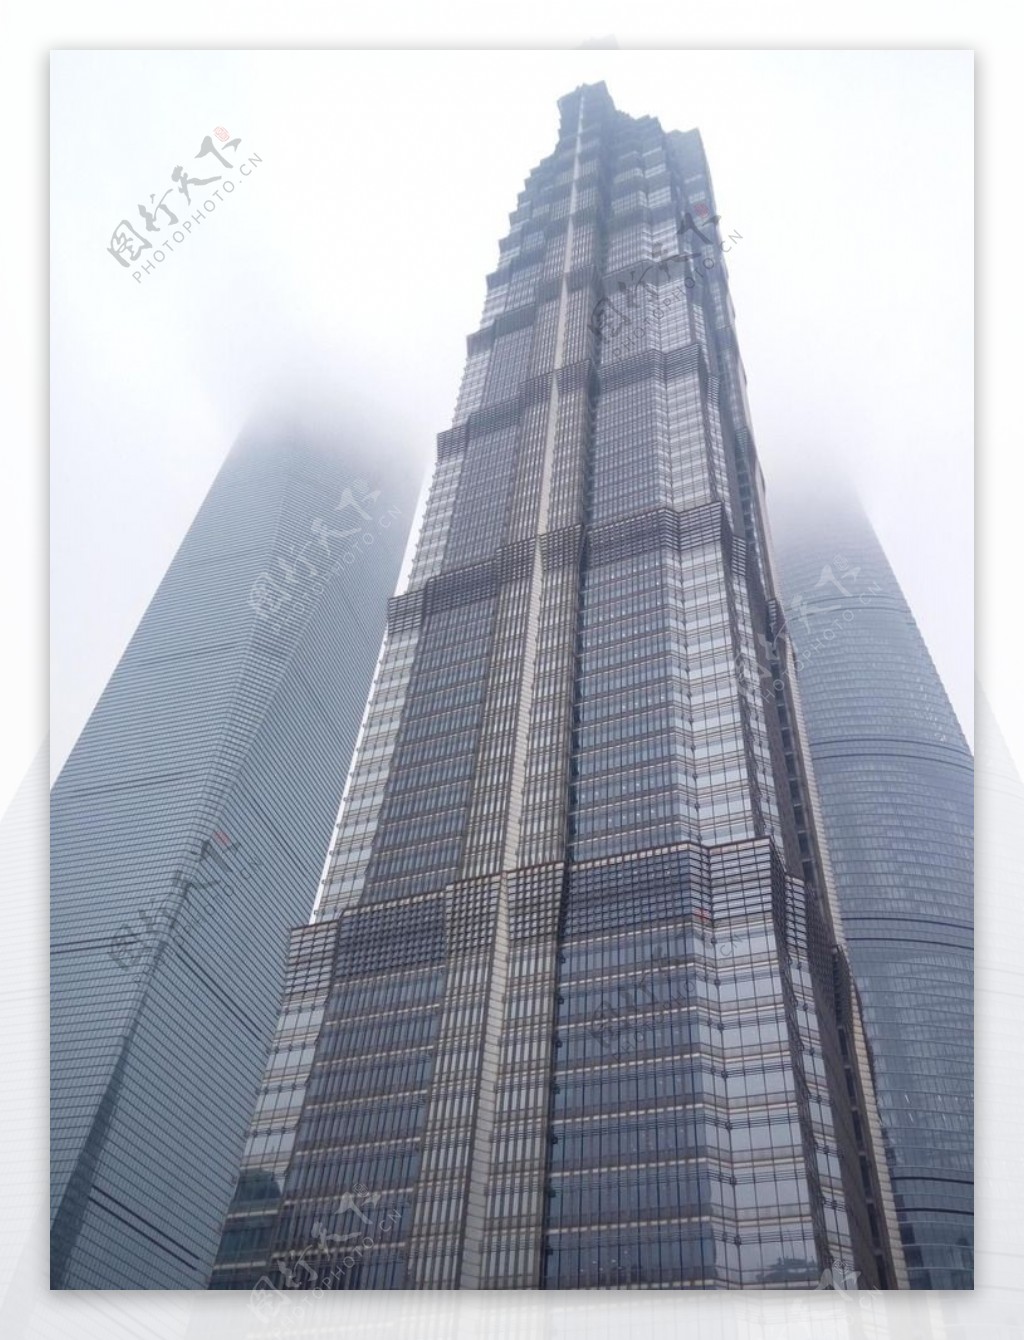 高耸入云的上海金茂大厦